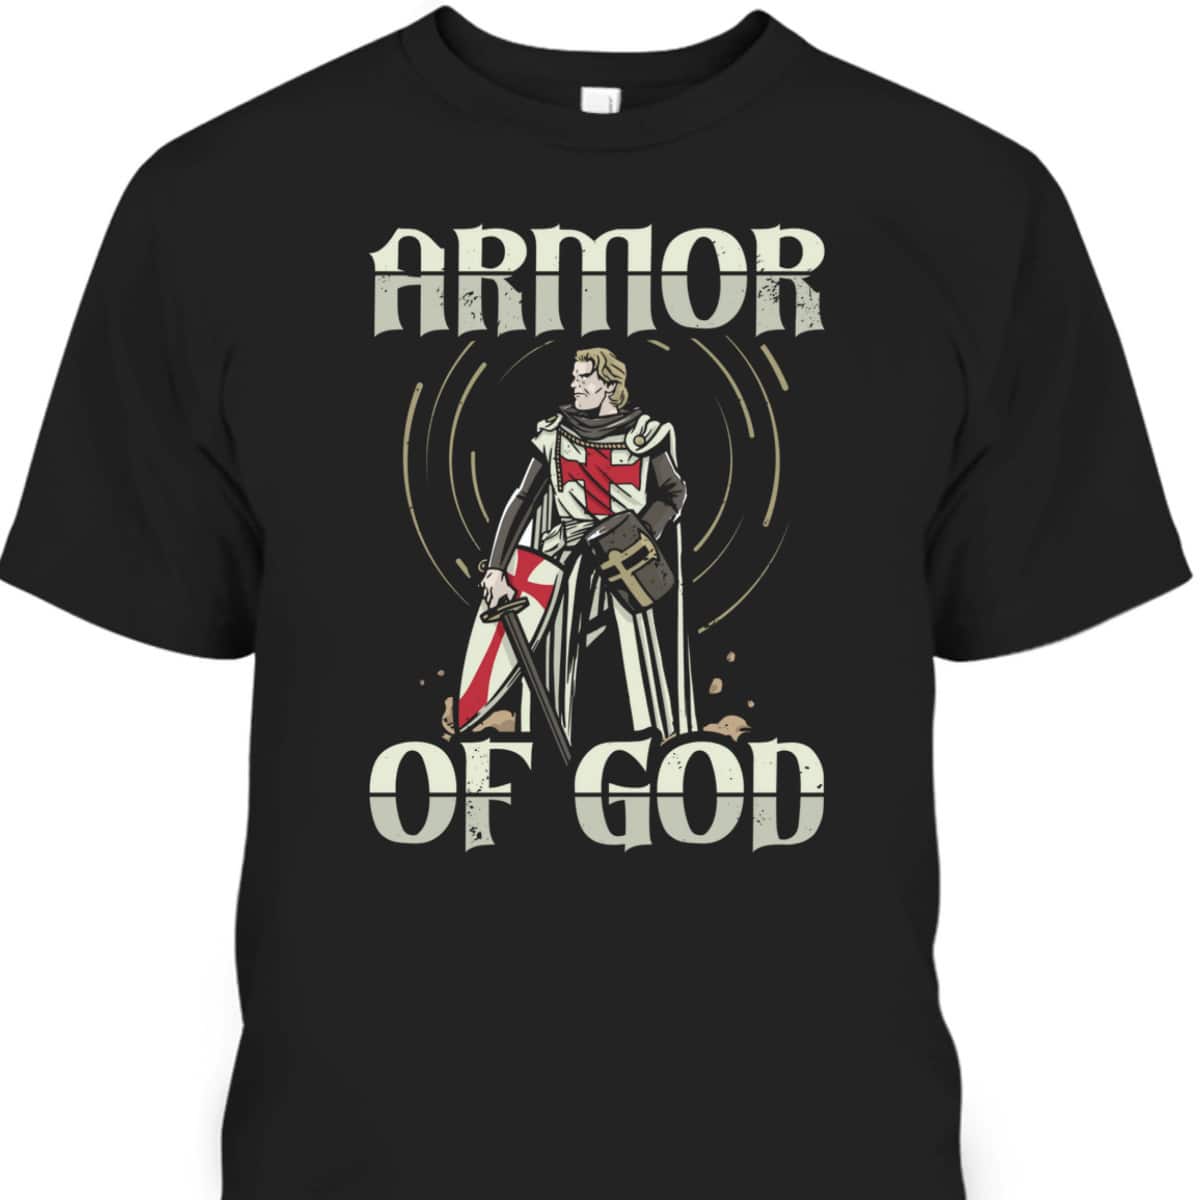 Armor Of God Templar Knight T-Shirt Christian Faith Jesus Christ